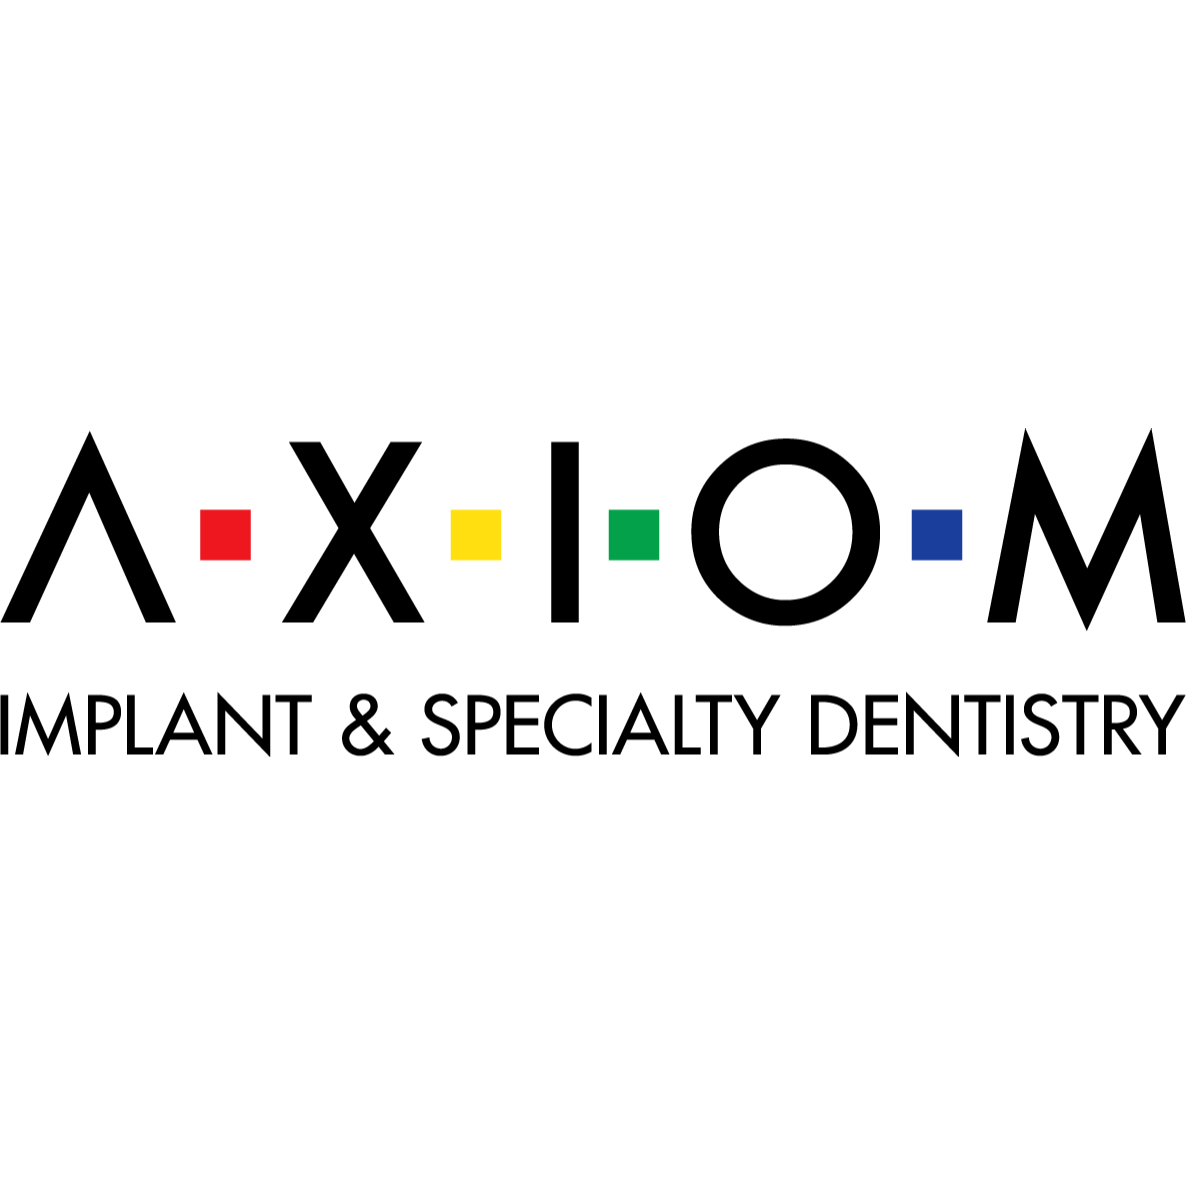 Matt Welebir DDS - AXIOM Implant & Specialty Dentistry - Summerlin (Las Vegas)